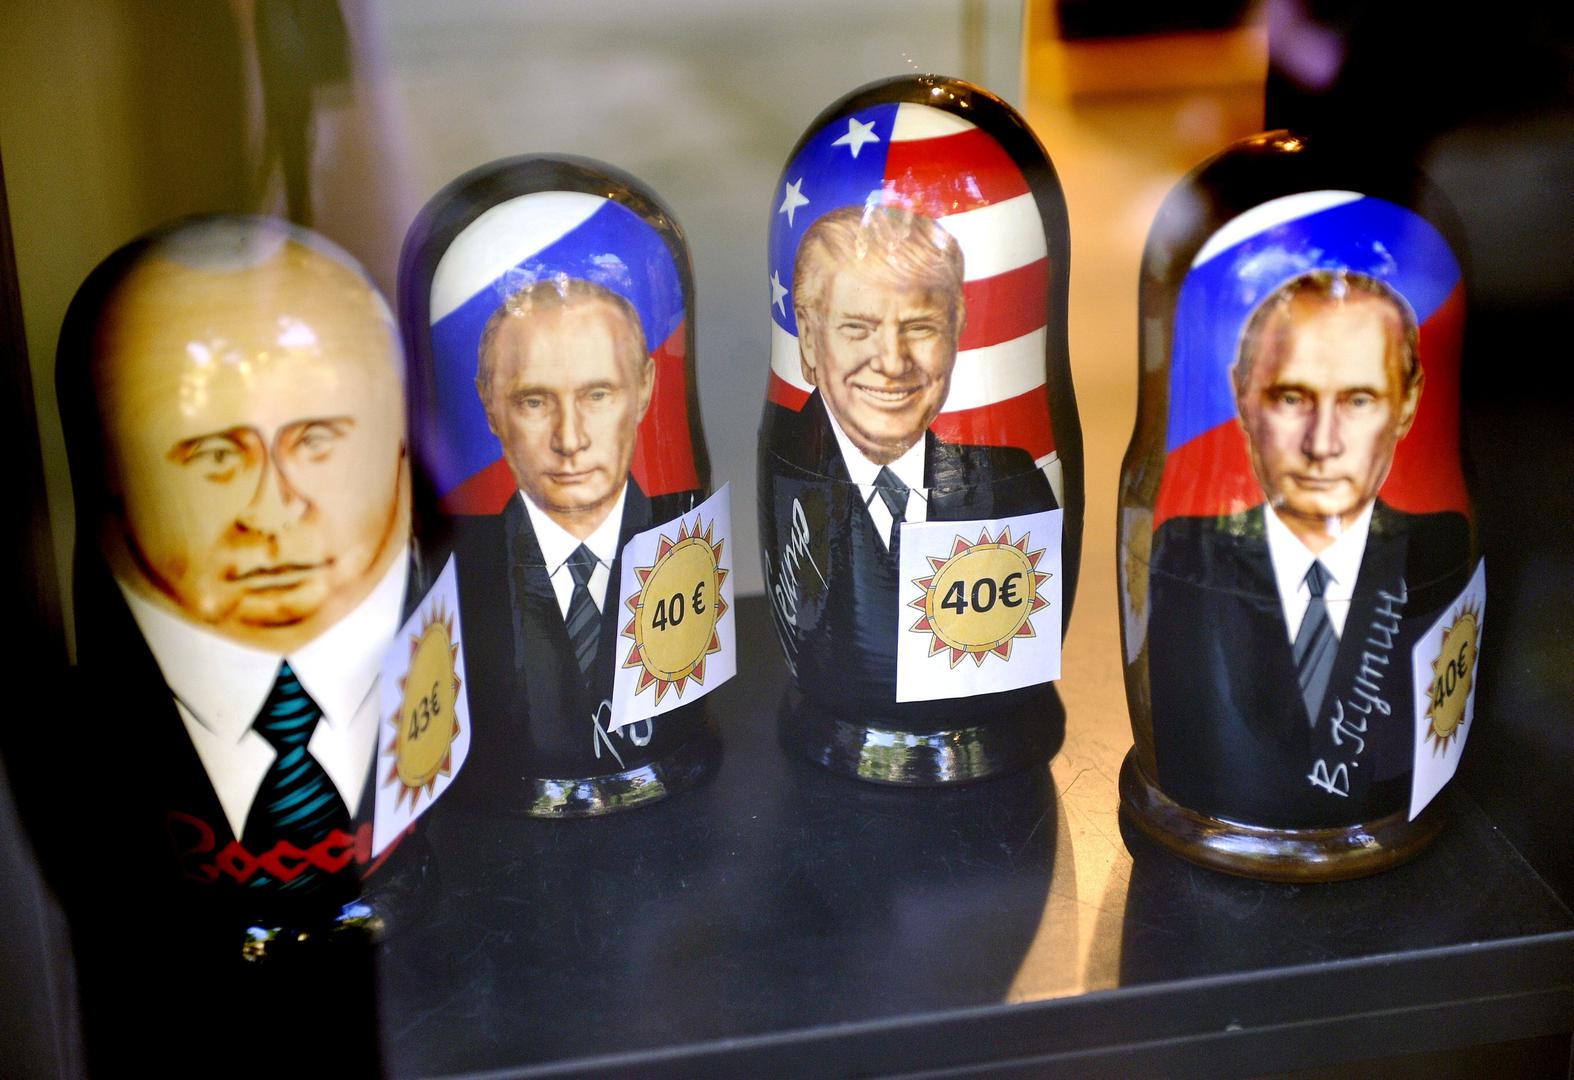 U Helsinkiju su u prodaji matrjoške s likovima Trumpa i Putina – cijena 40 eura